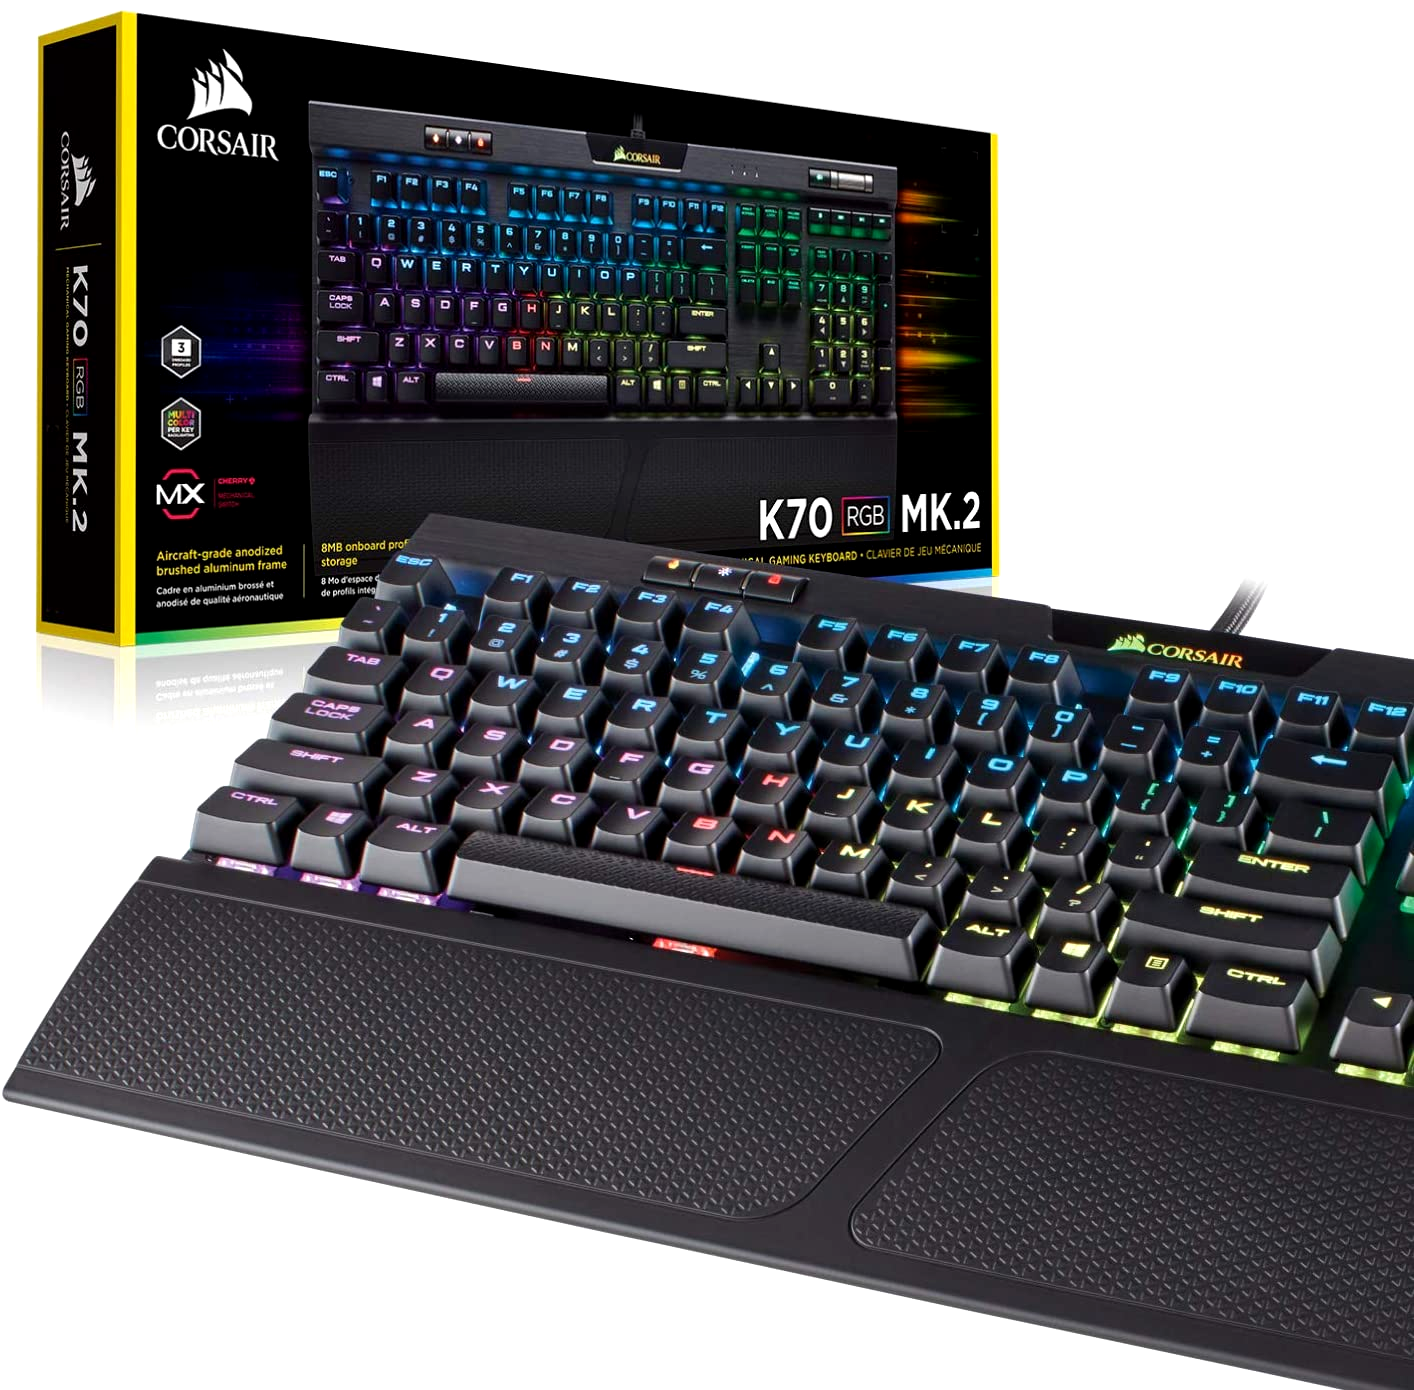 Prik passend voorjaar CORSAIR K70 RGB MK.2 RAPIDFIRE Mechanical Gaming Keyboard USB Cherry MX  Speed 843591061827 | eBay